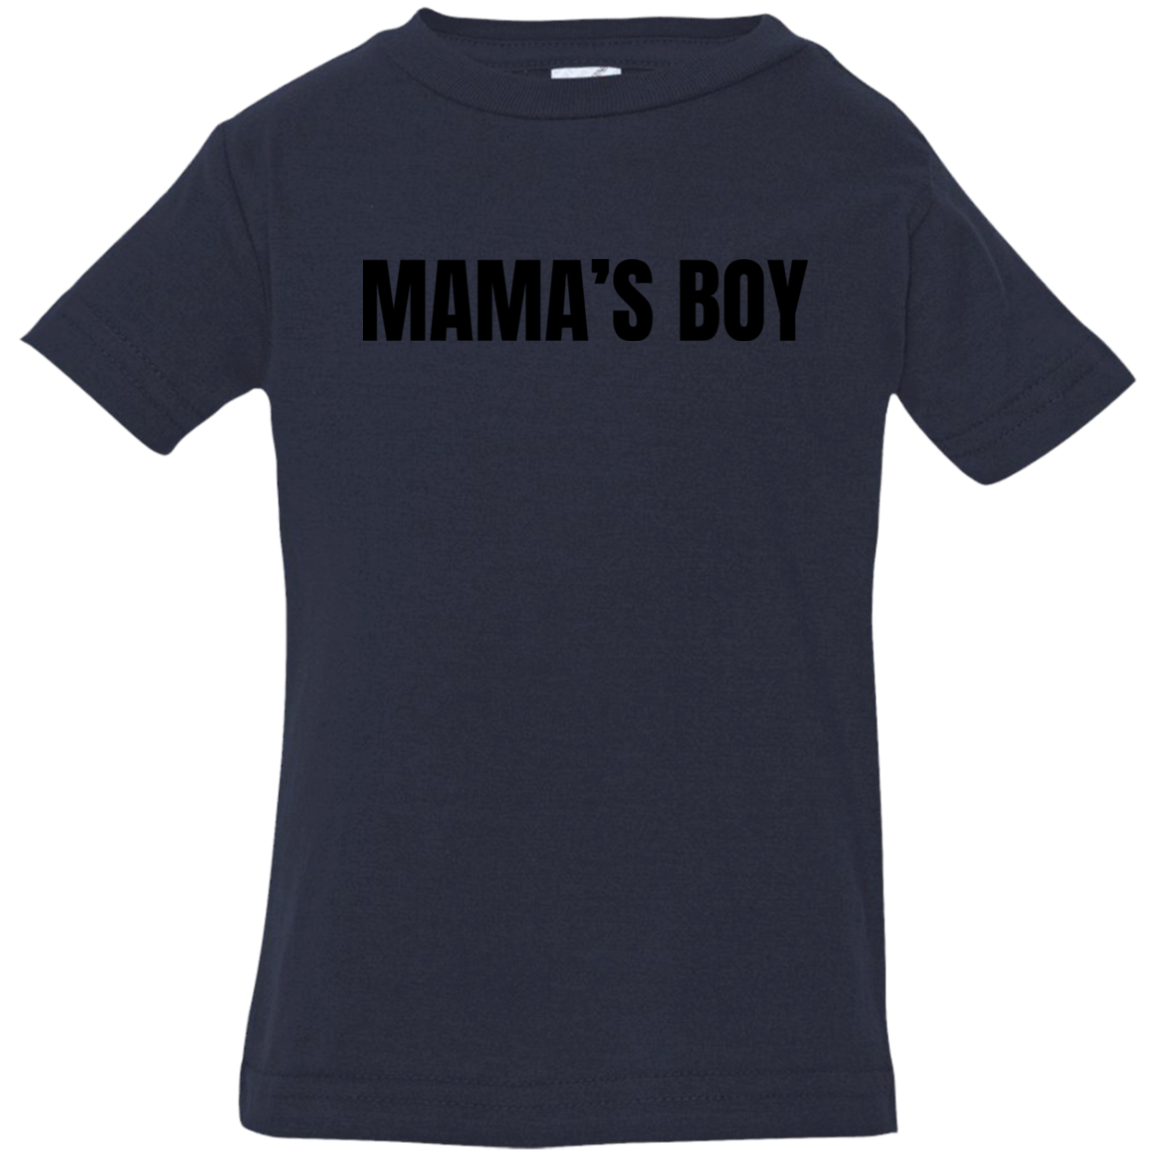 Mama's Boy - 6, 12, 18, & 24 Month Boy's Jersey T-Shirt